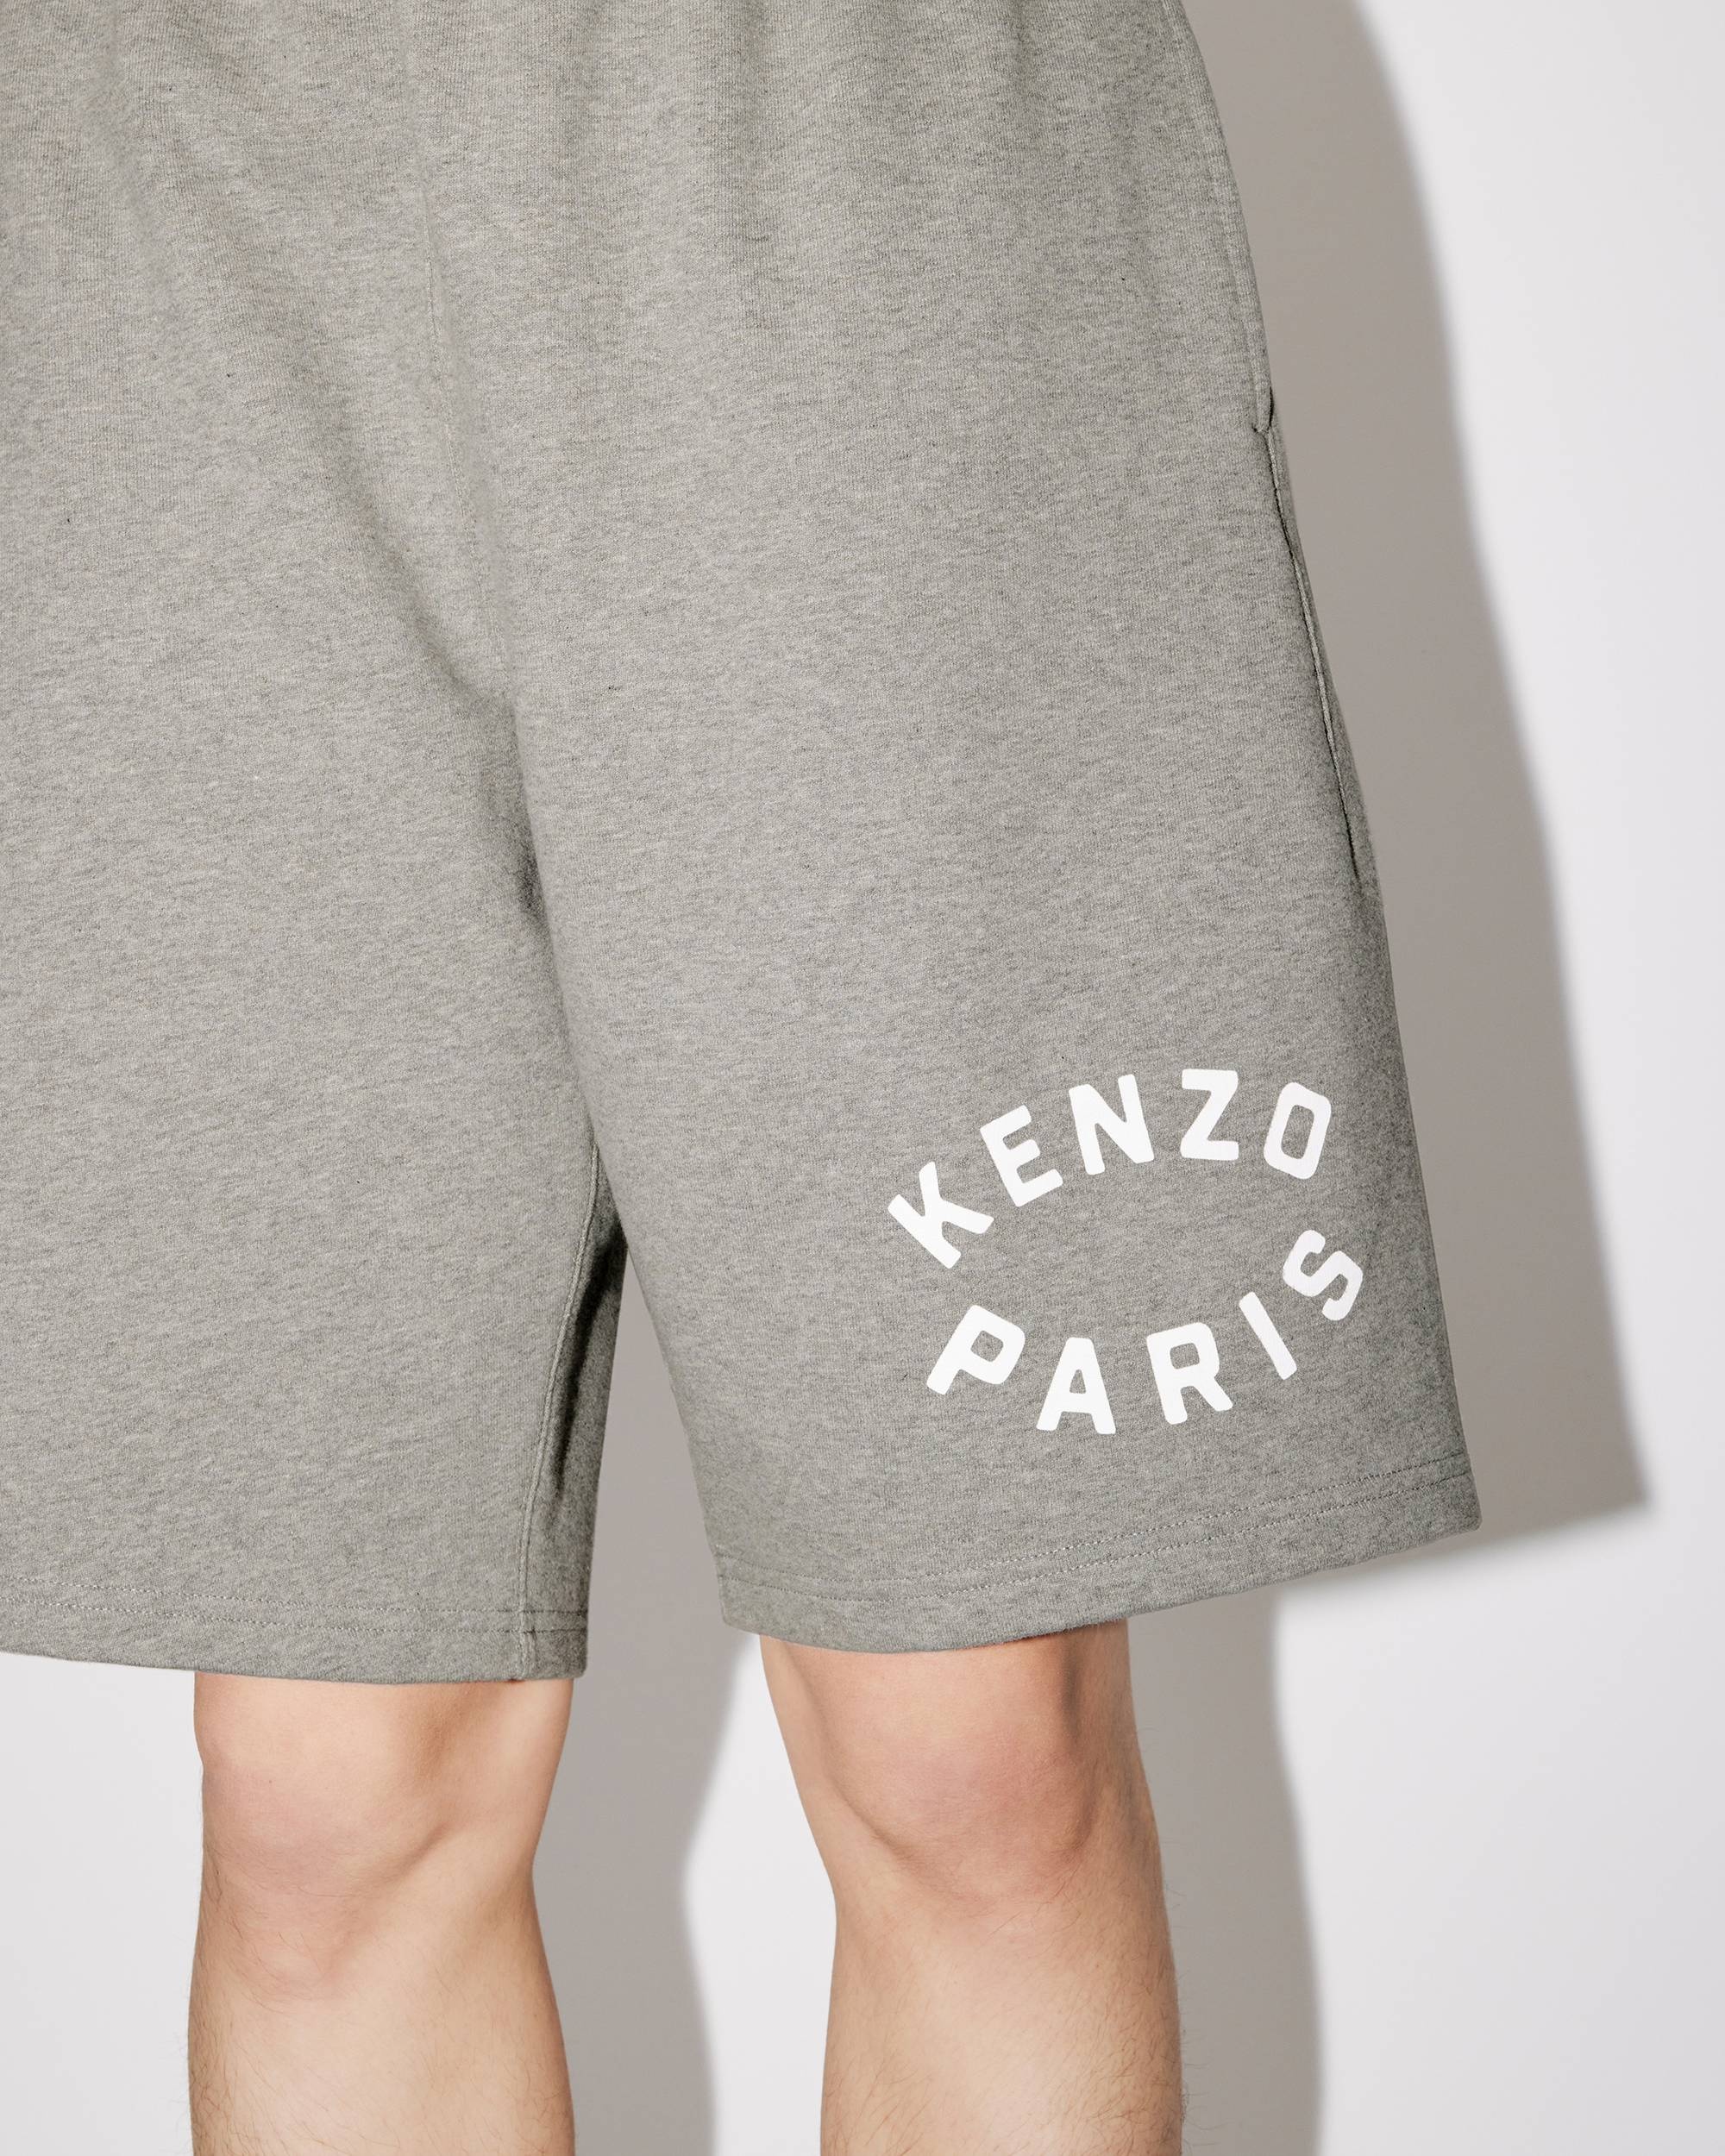 'KENZO Target' shorts - 6